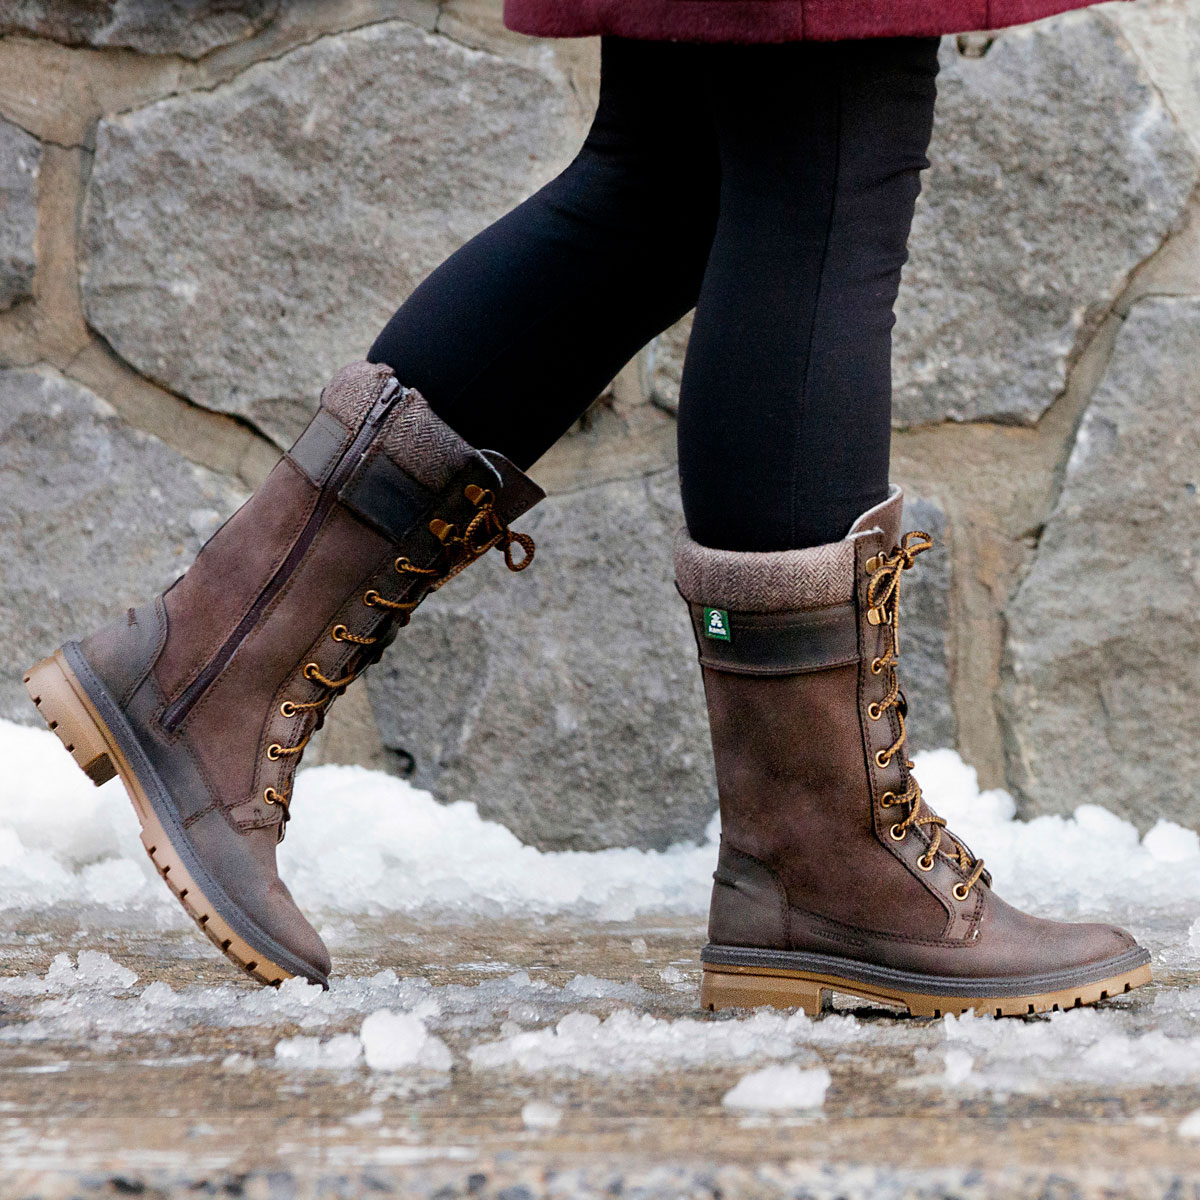 kamik women's rogue 200g winter boots